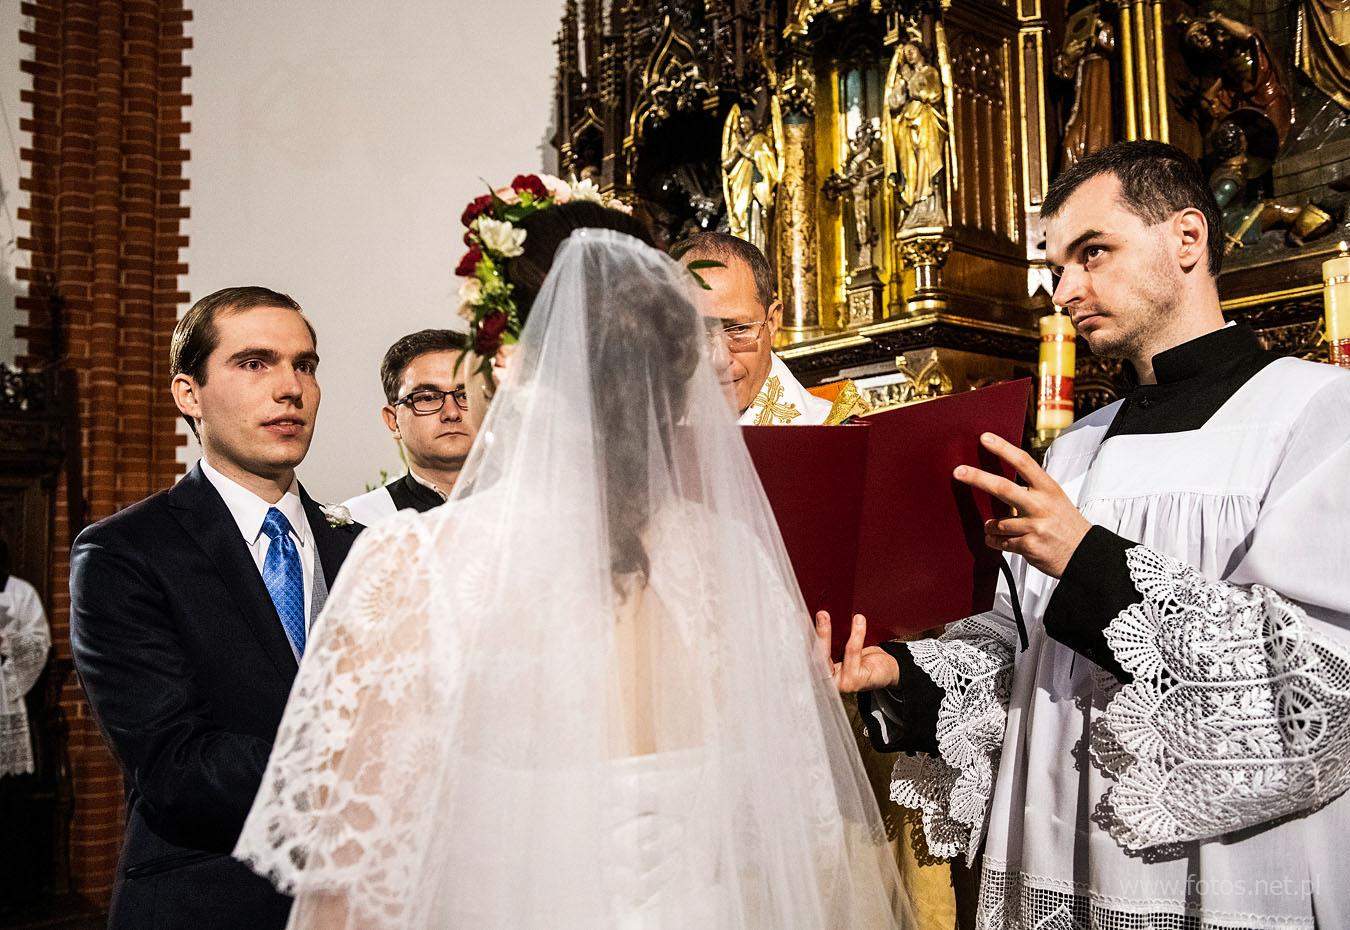 Wrocław - ślub w rycie trydenckim